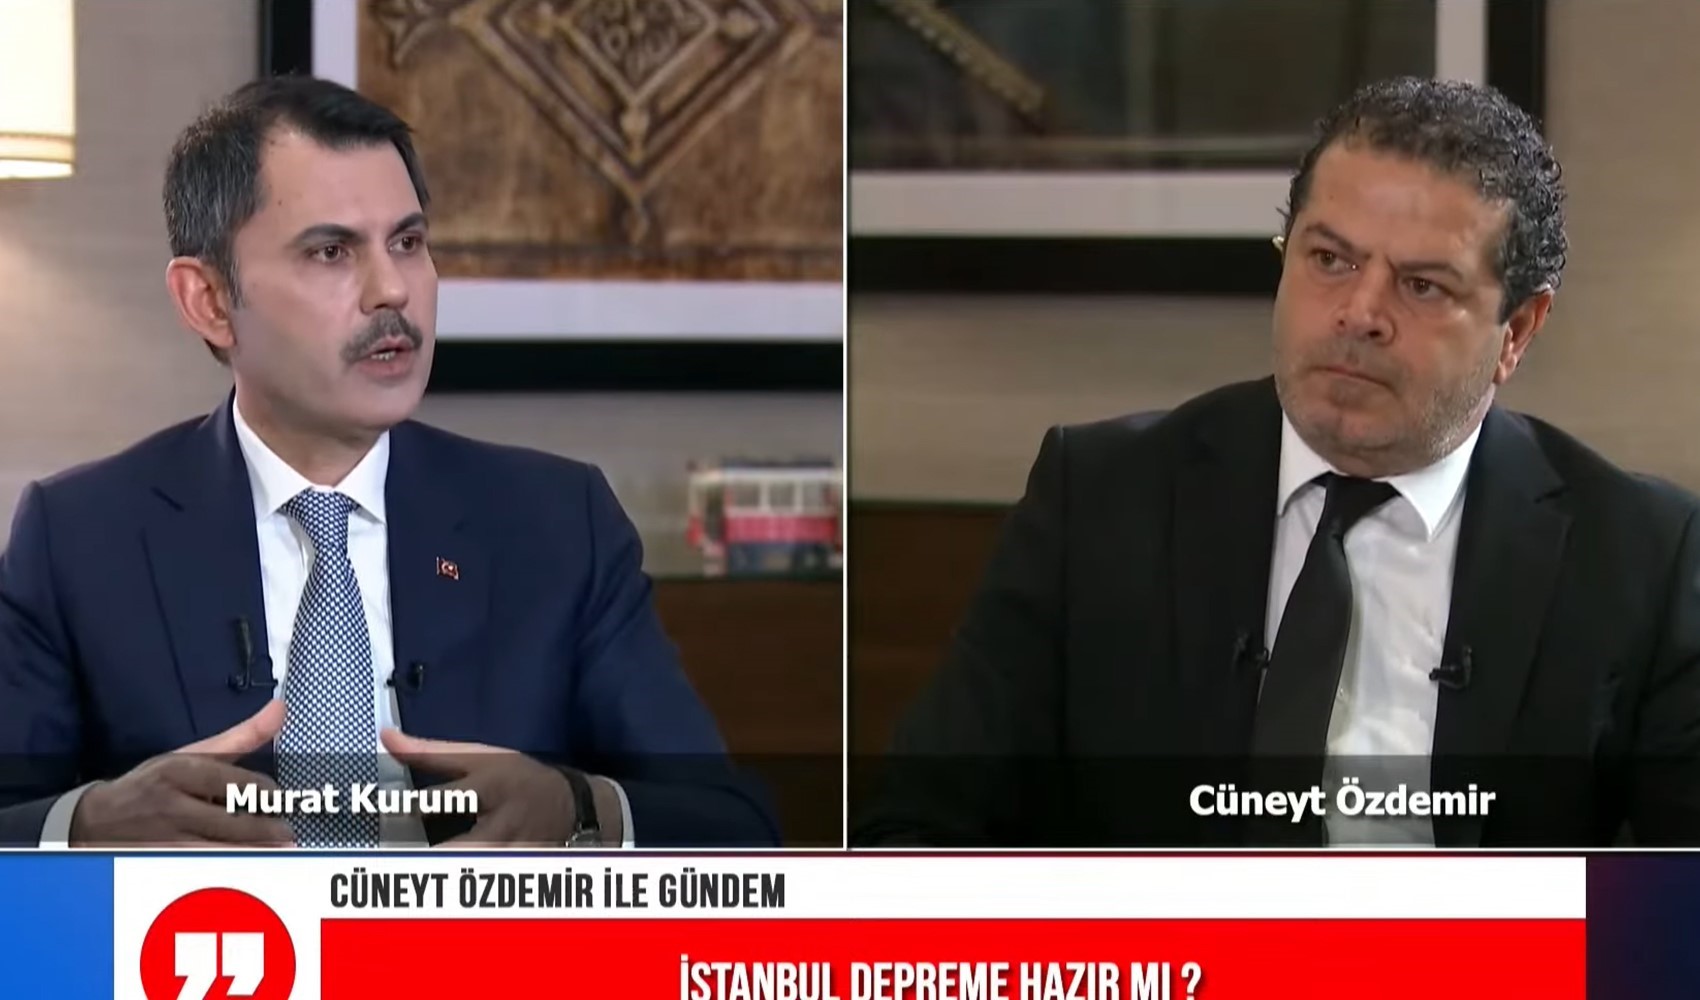 İBB Başkan adayı Murat Kurum Cüneyt Özdemir'in Kanal İstanbul sorusunu yanıtladı. 'Erdoğan'a direnir misiniz?' sözlerine yanıt verdi.